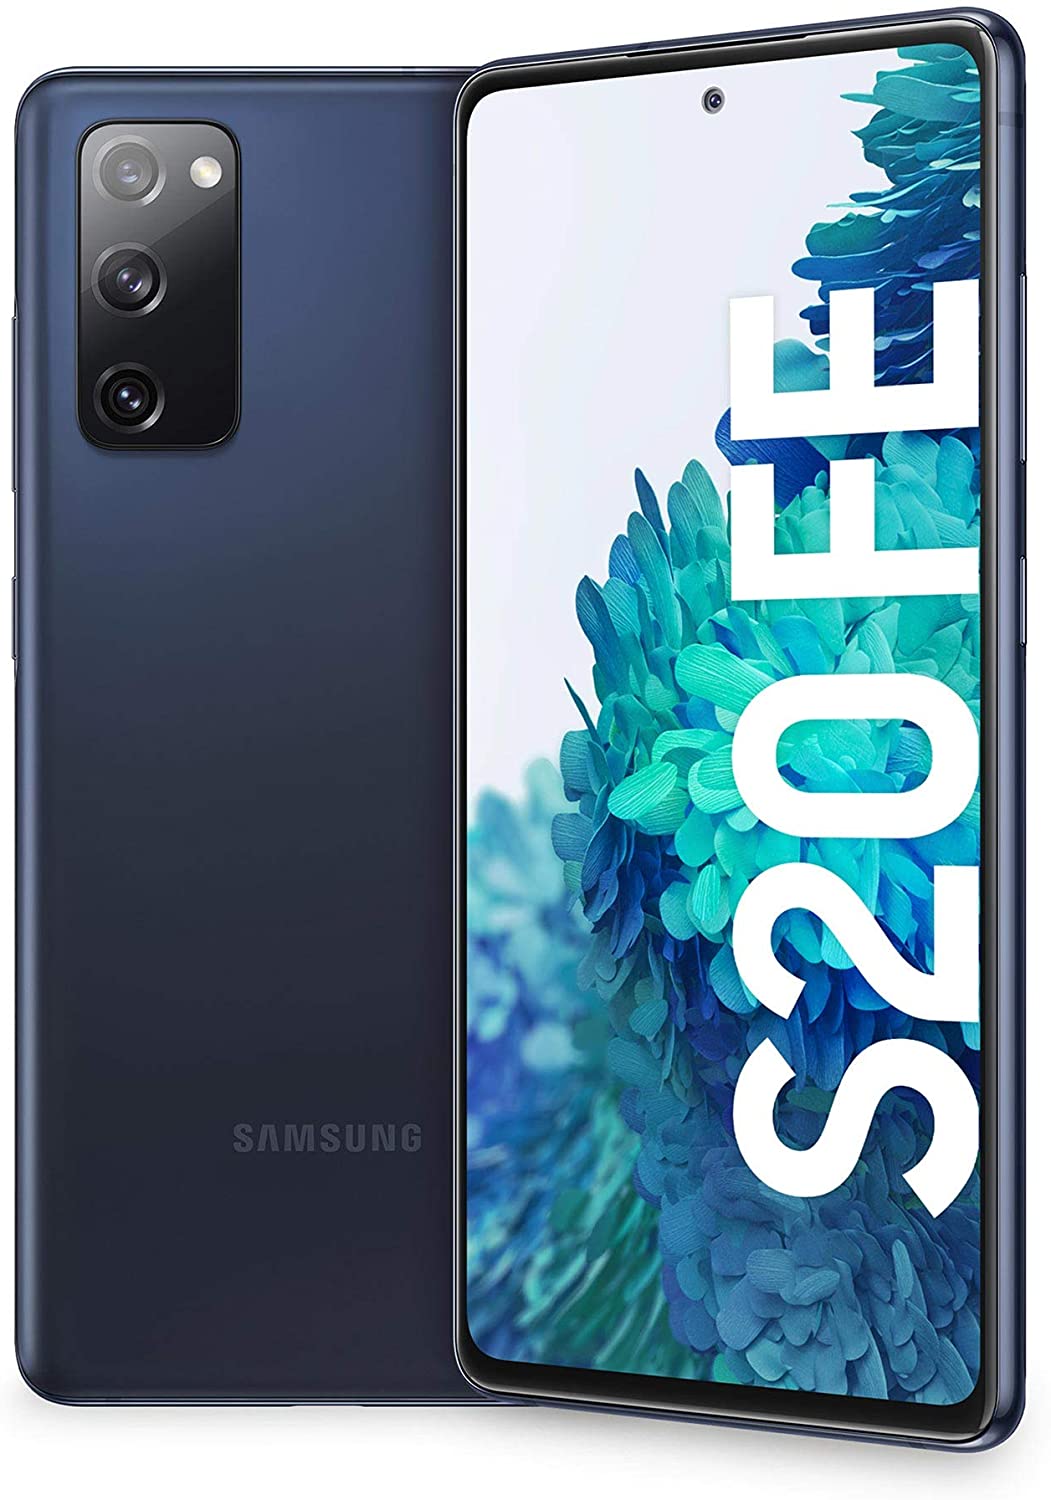 Hinnavaatlus - Samsung Galaxy S20 FE 128GB Cloud Navy